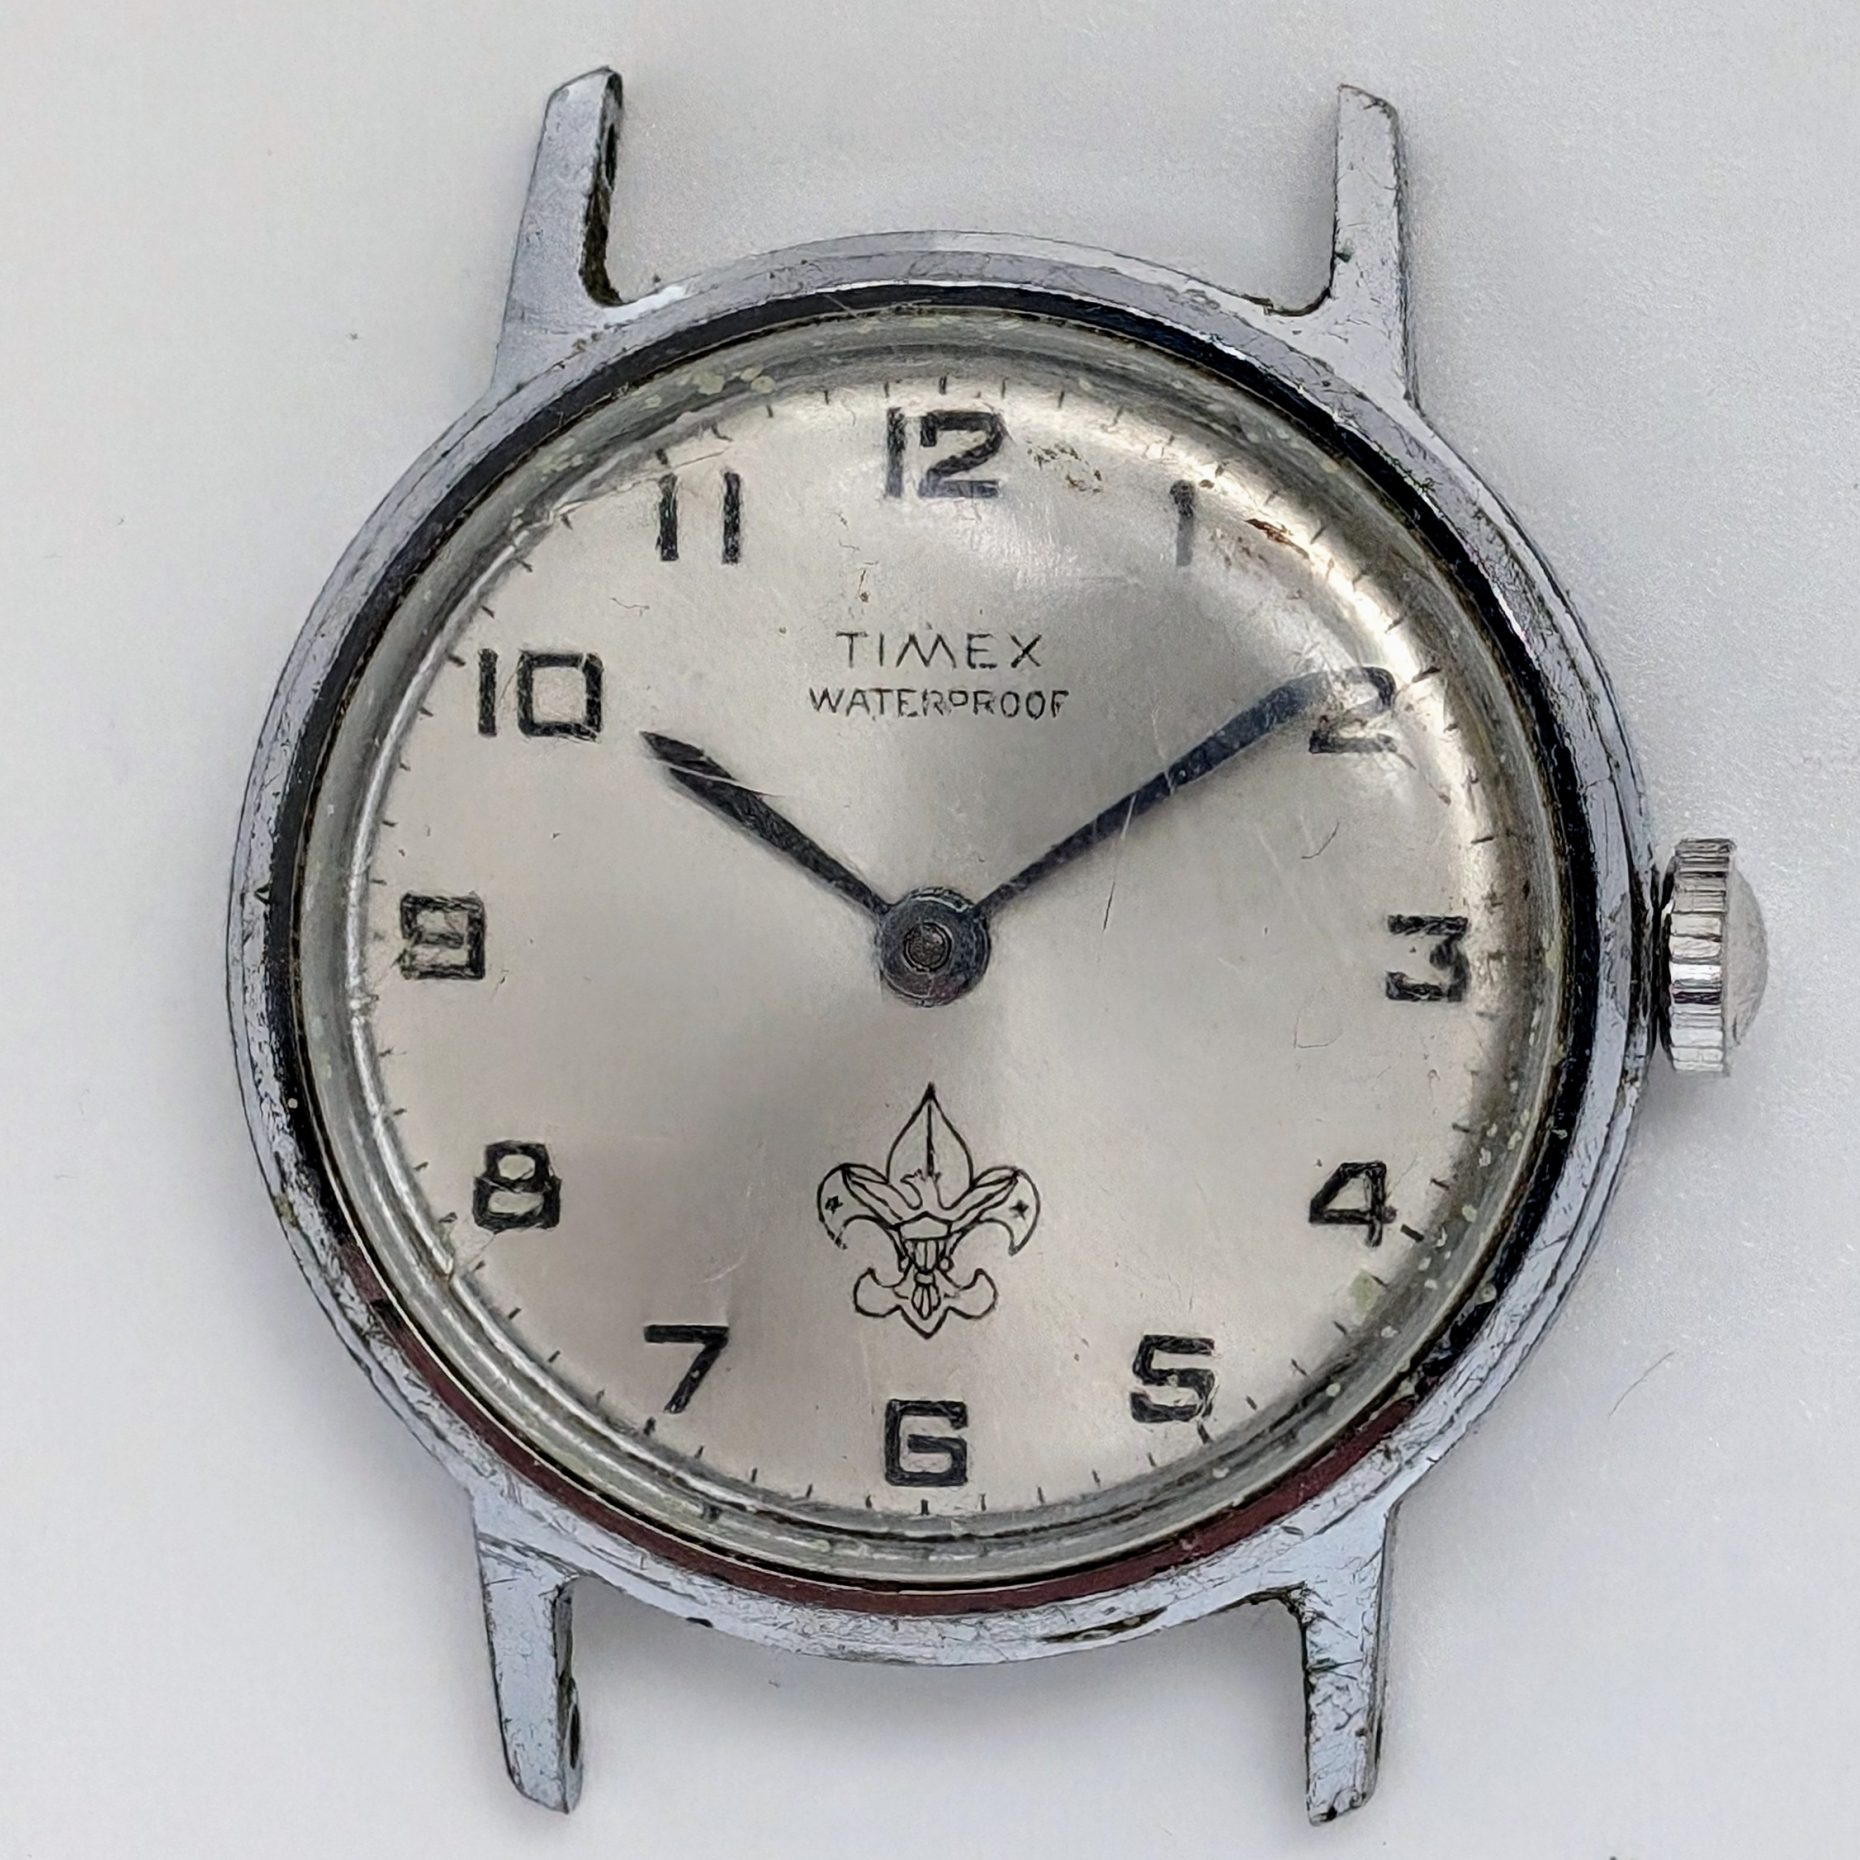 Timex Sprite Scout Watch 1150 2465 1965